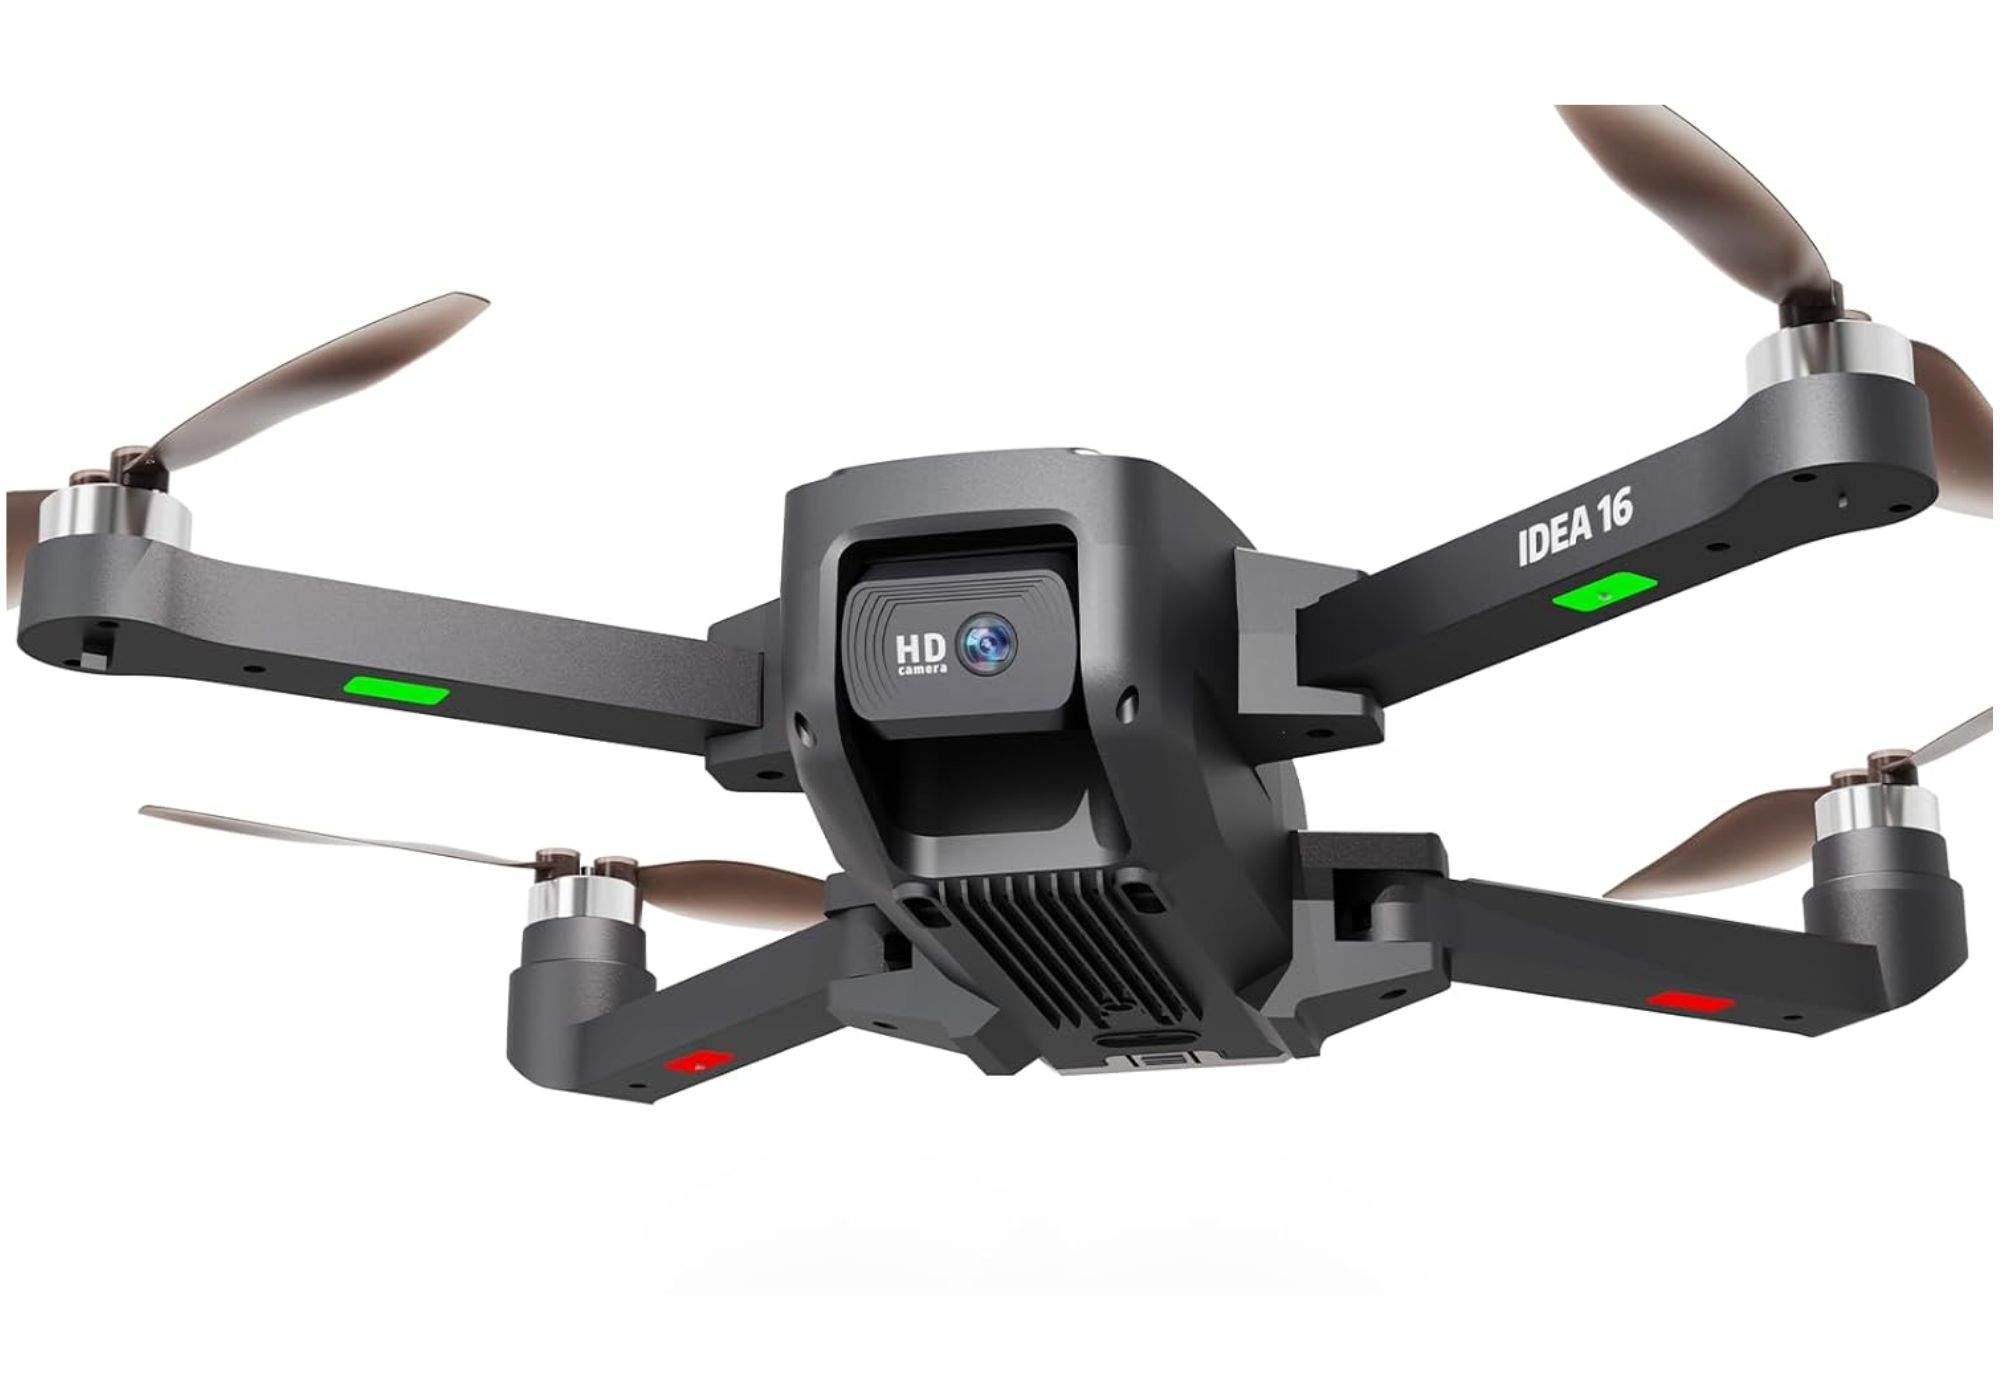 Descubre el mundo desde las alturas con este drone con cámara 4K rebajado a más de la mitad de su precio